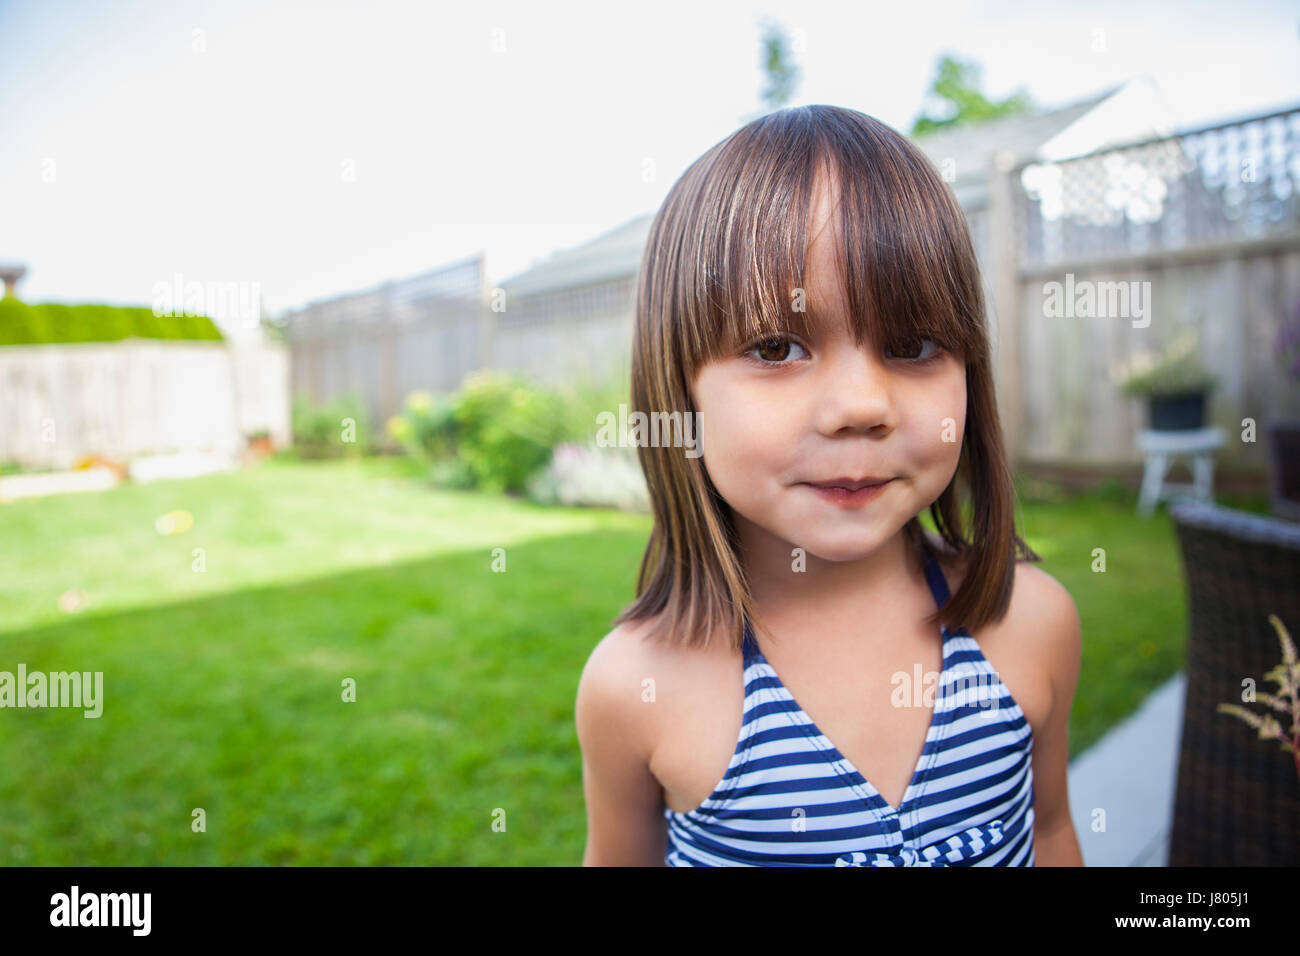 Portrait girl in bathing suit in summer backyard Stock Photo